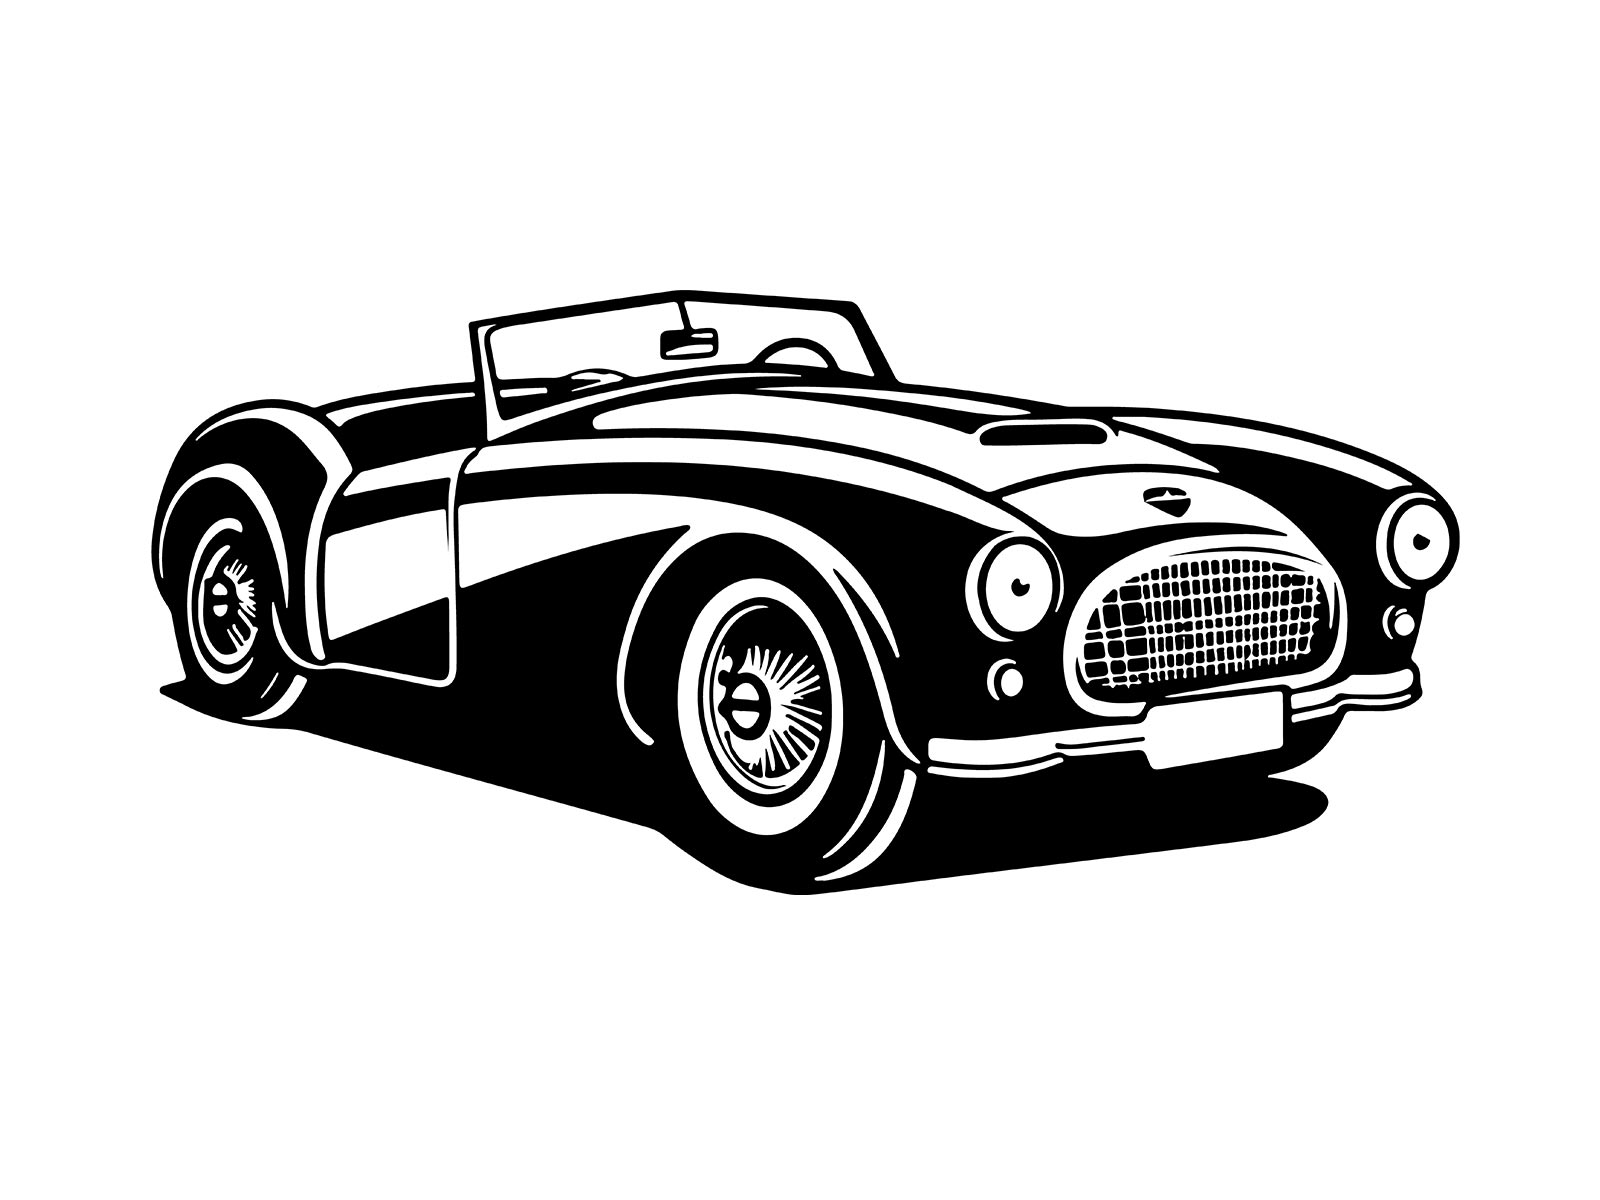 Vector vintage car illustration